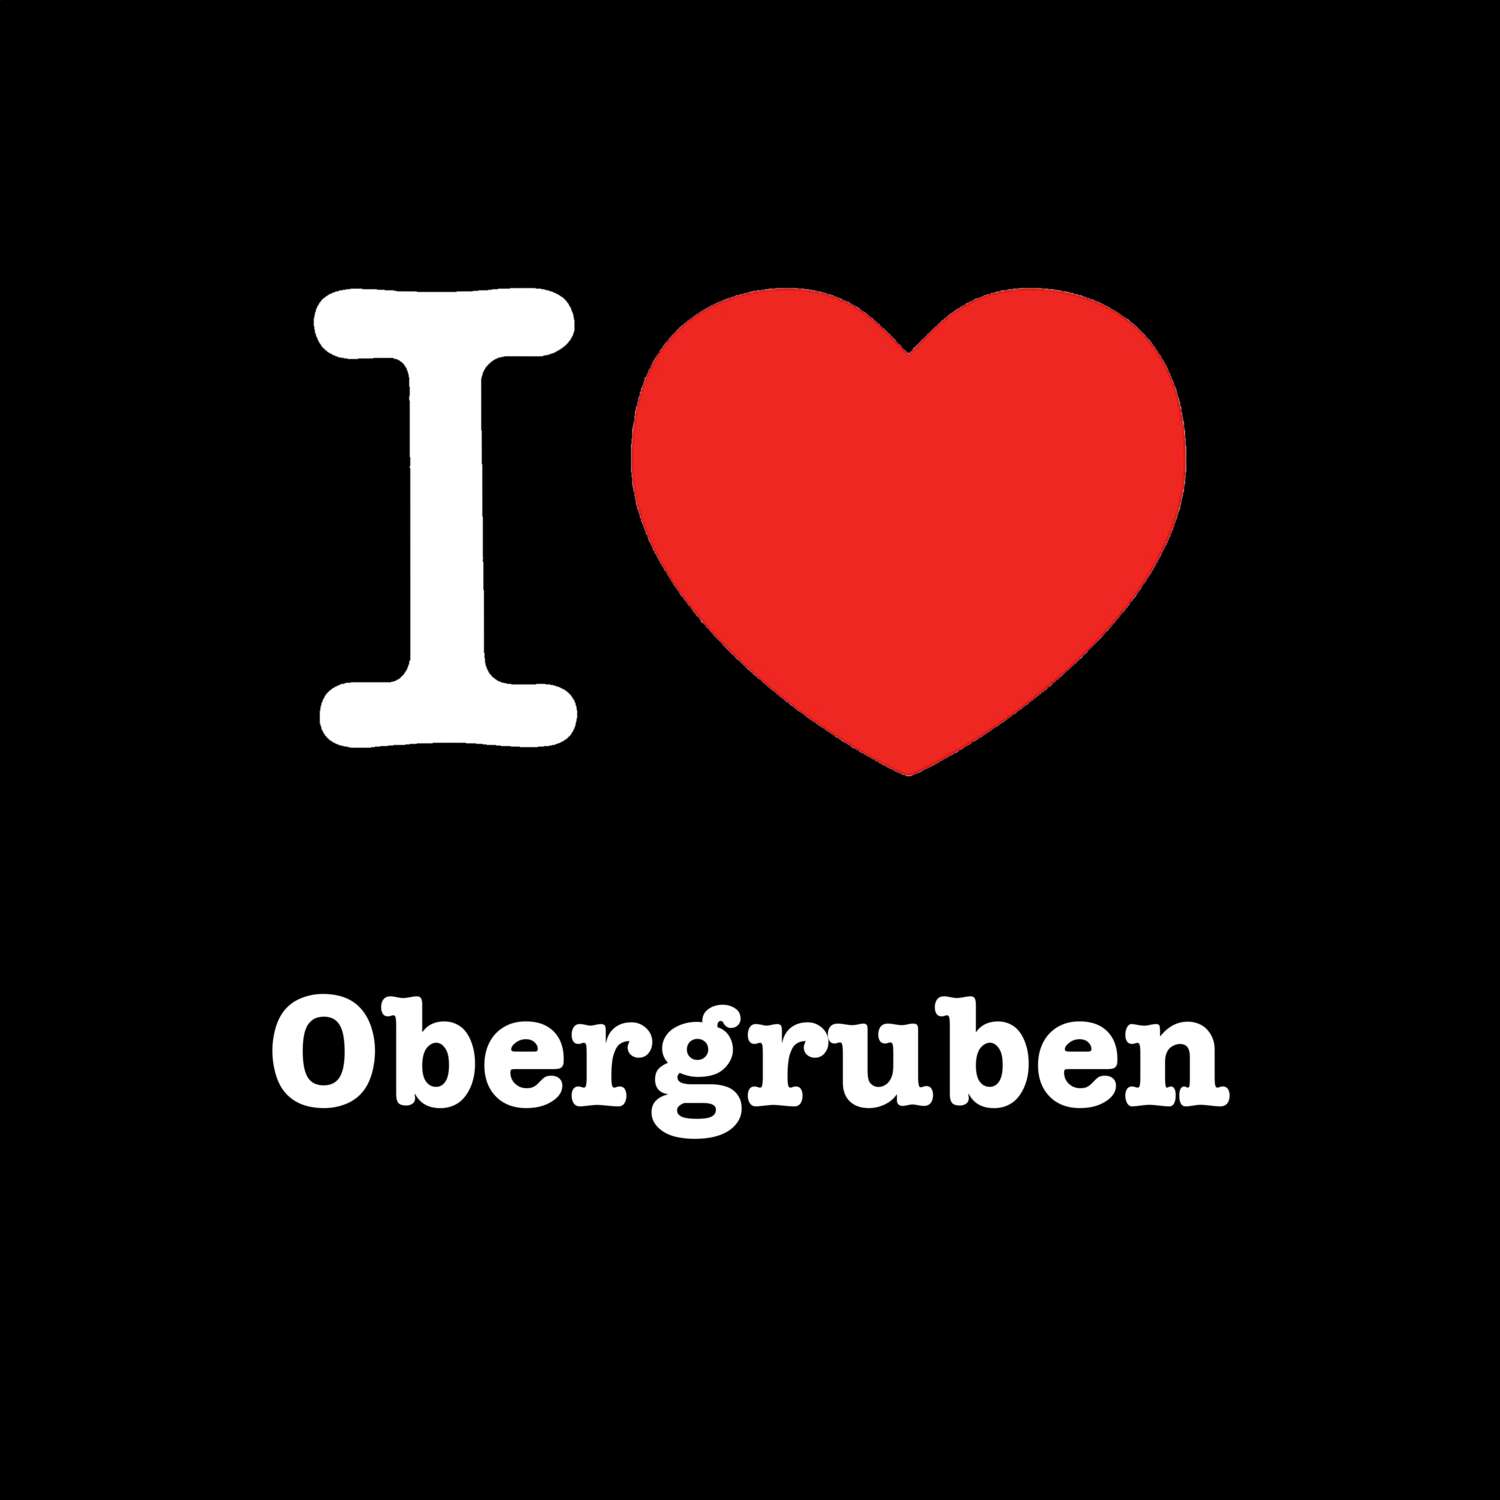 Obergruben T-Shirt »I love«